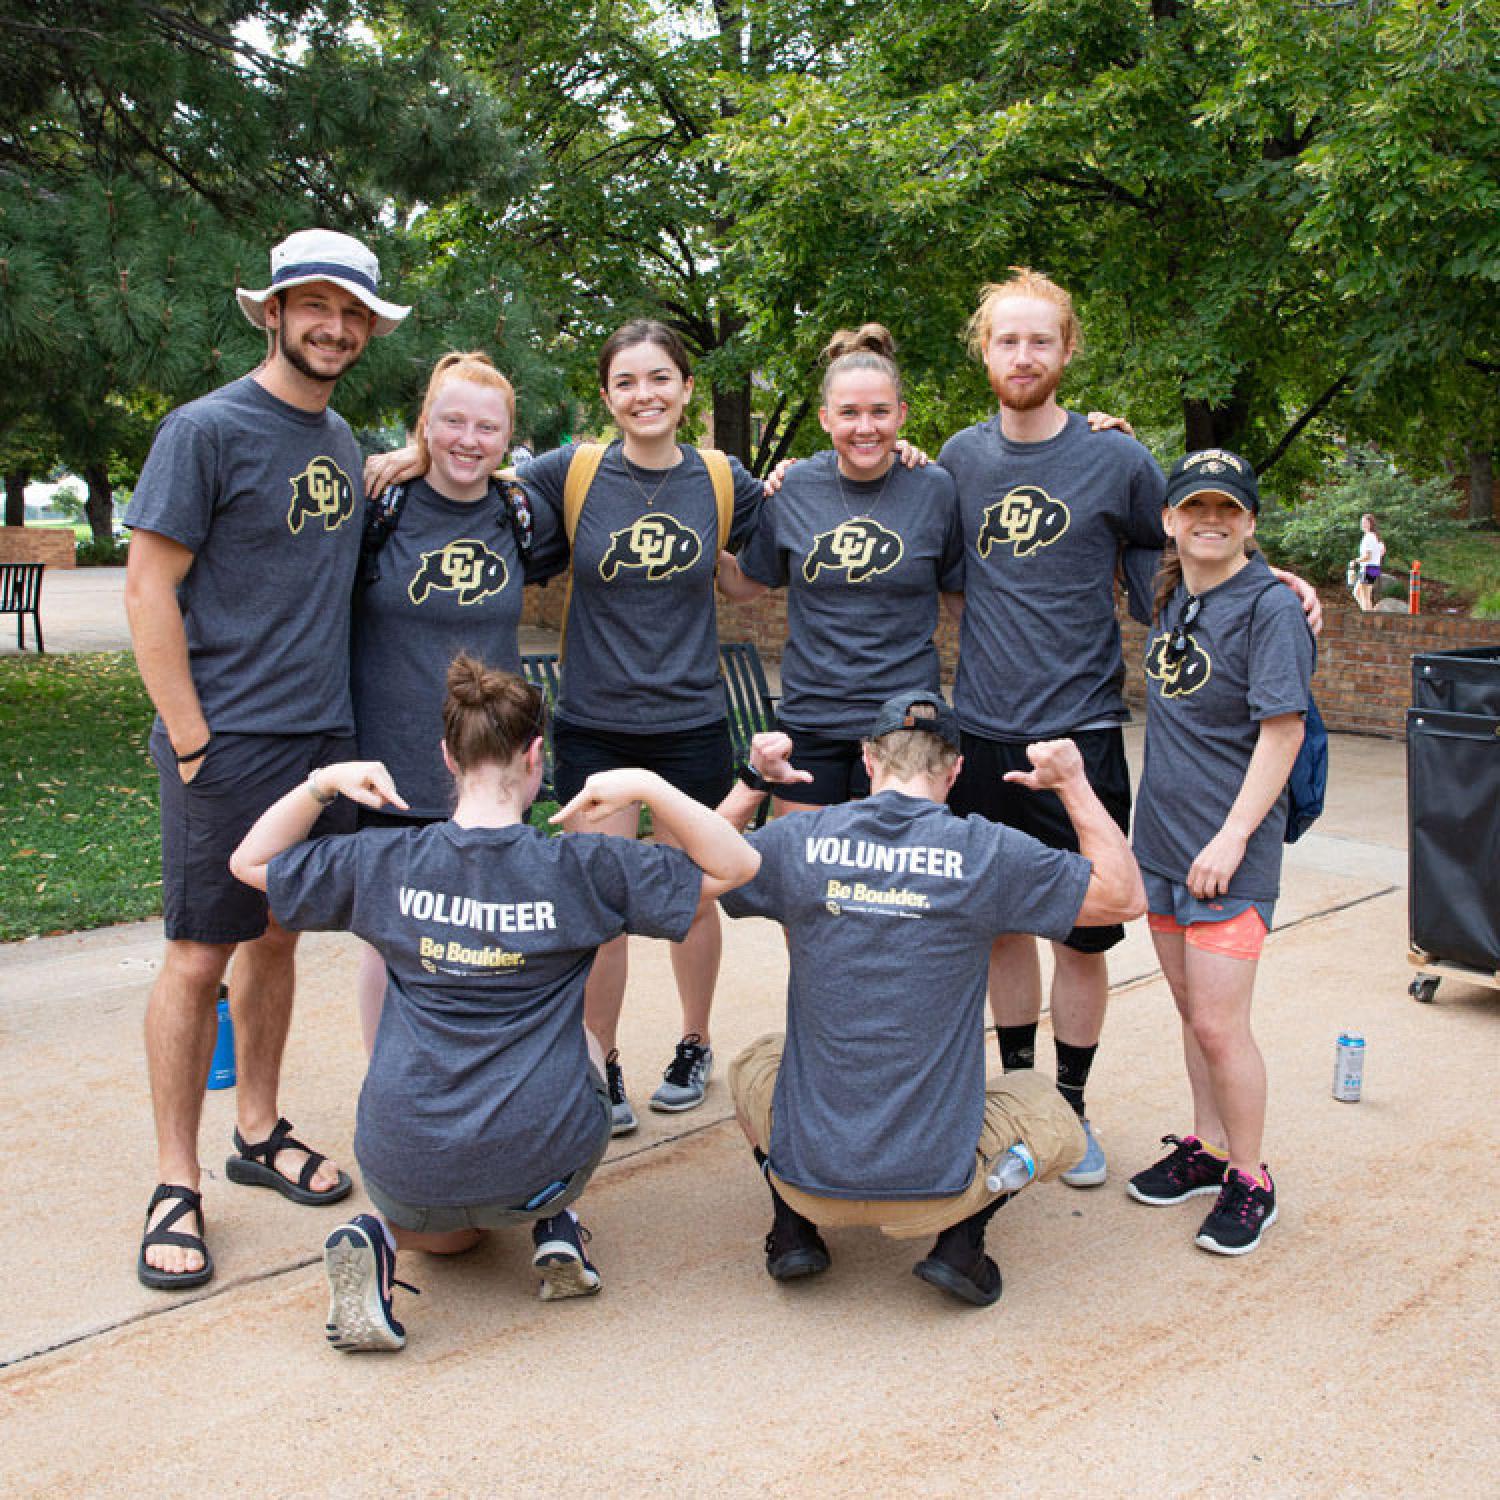 A group of volunteers wearing CU Boulder volunteering shirts